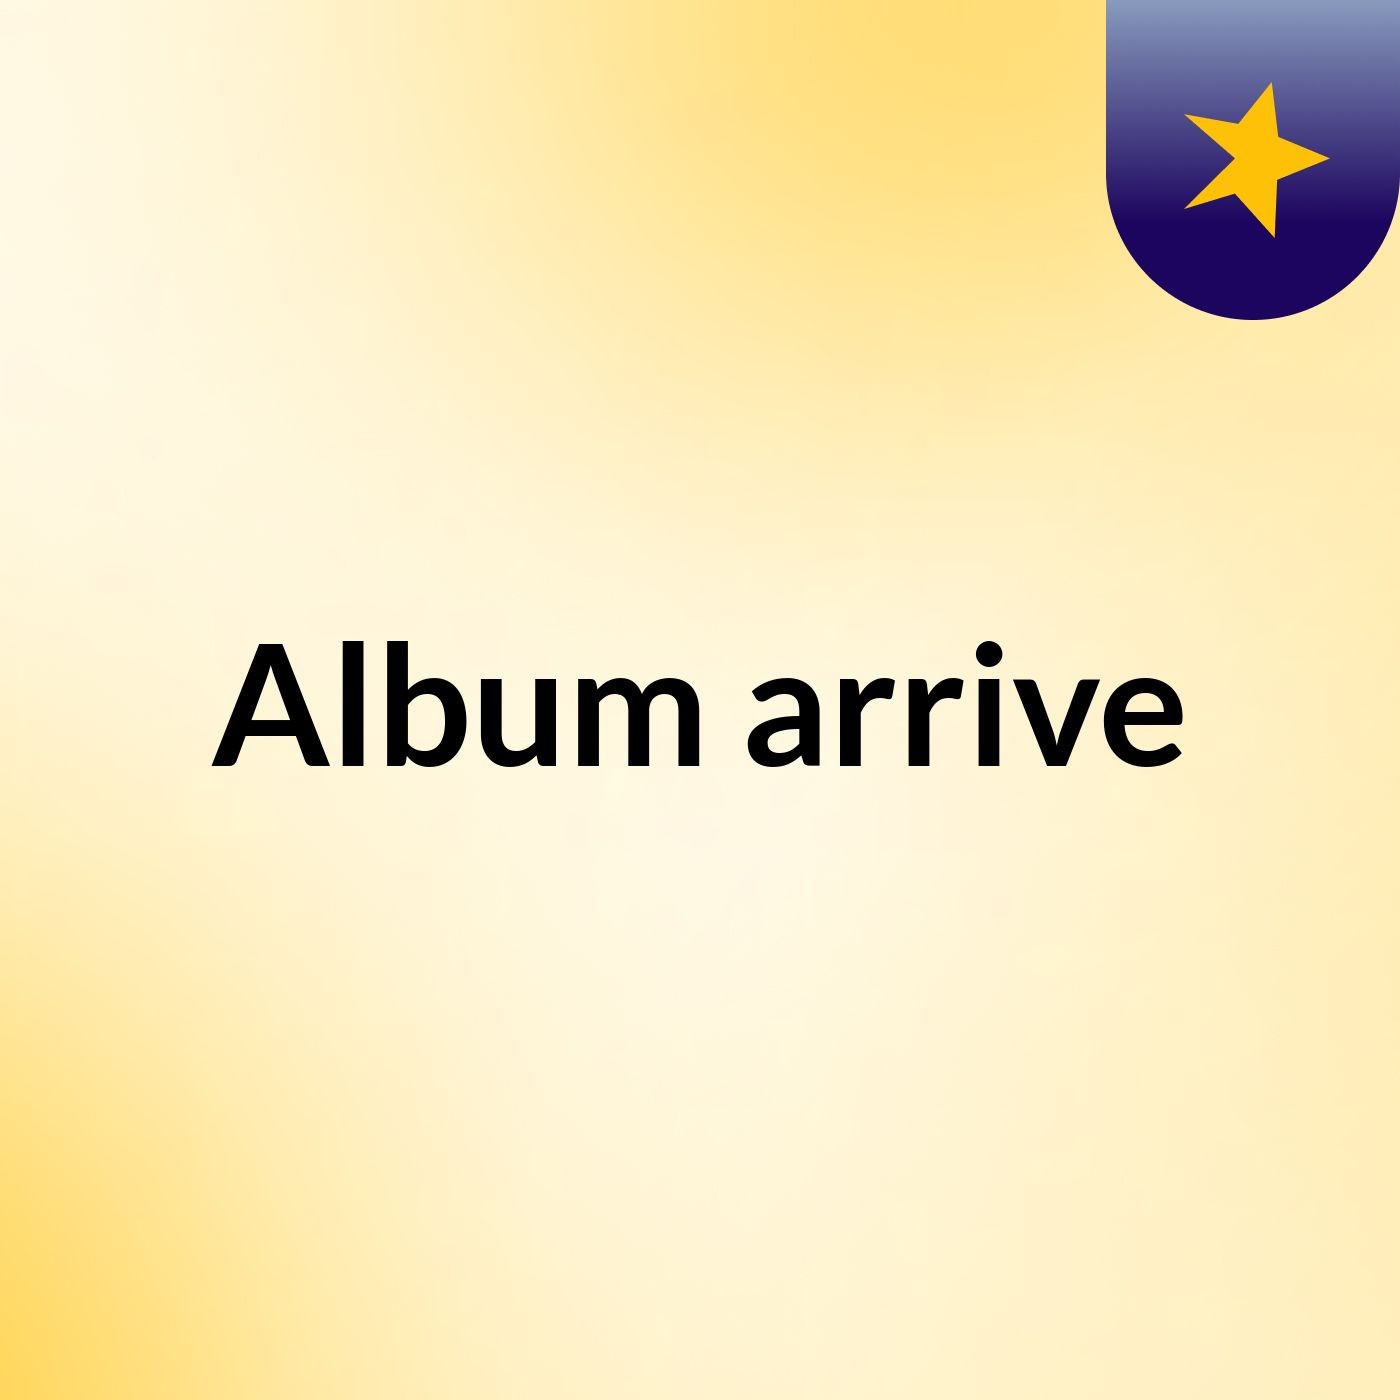 Album arrive